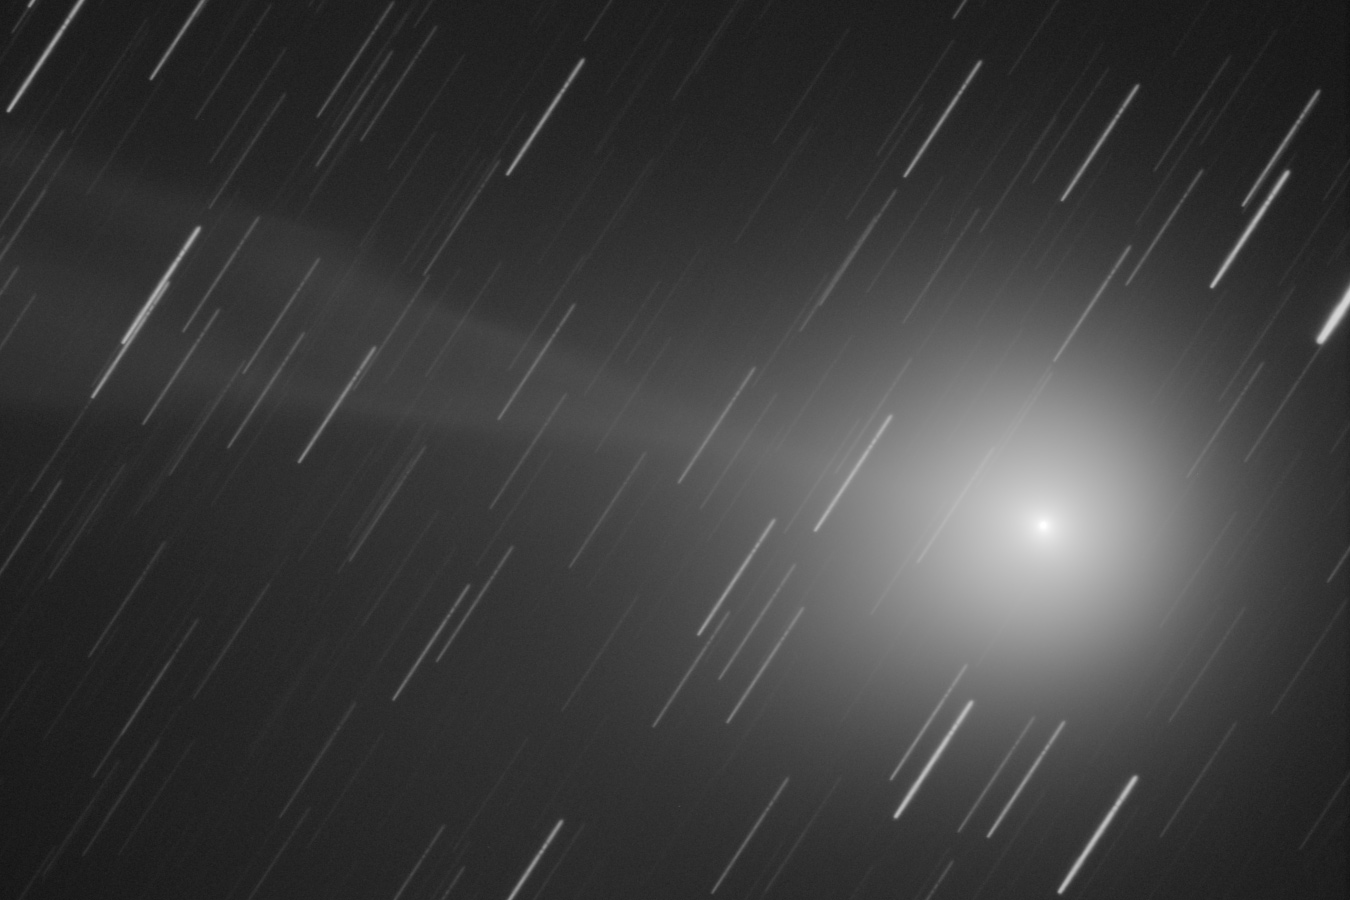 Komet C/2014 Q2 (Lovejoy) am 31. Jänner 2015